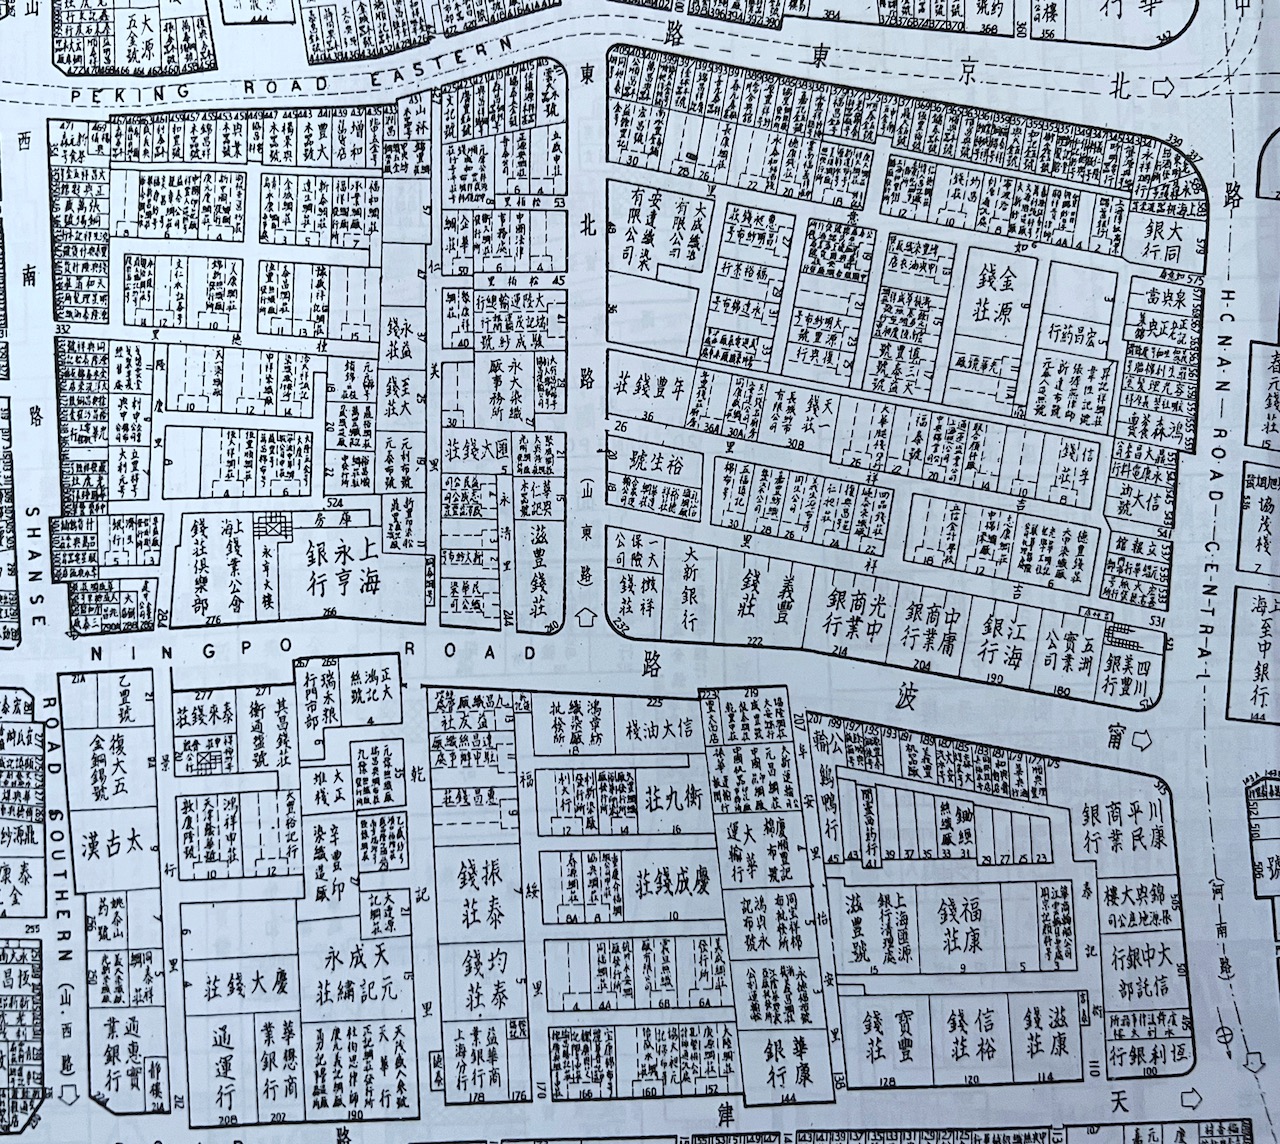 1947年版 行号路图录 宁波路（河南中路至山西南路段，包括了美丰银行、钱业公会）